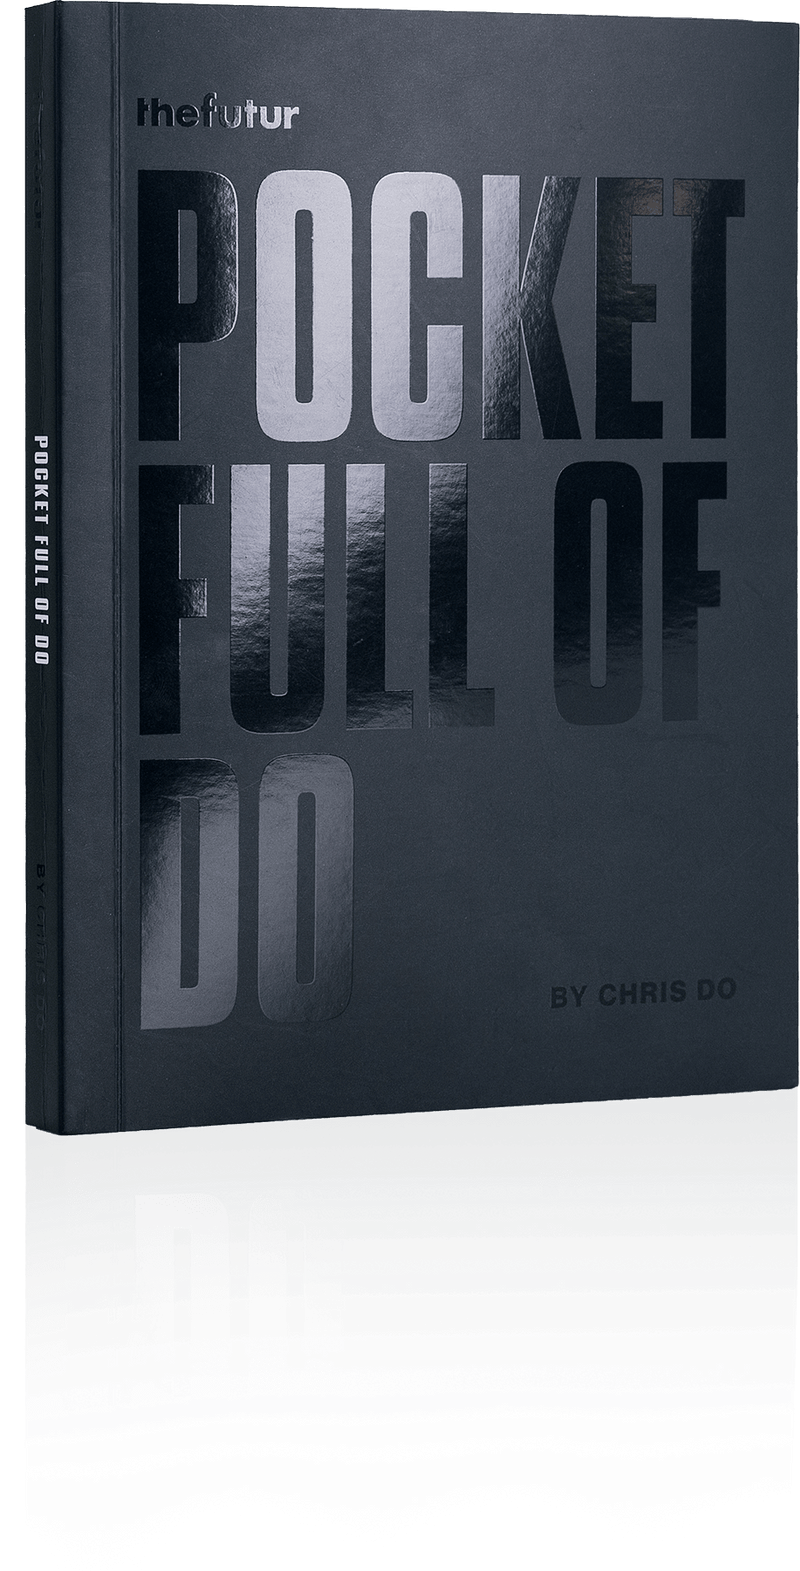 Chris Do (thefutur.com) – Pocket Full of Do Download